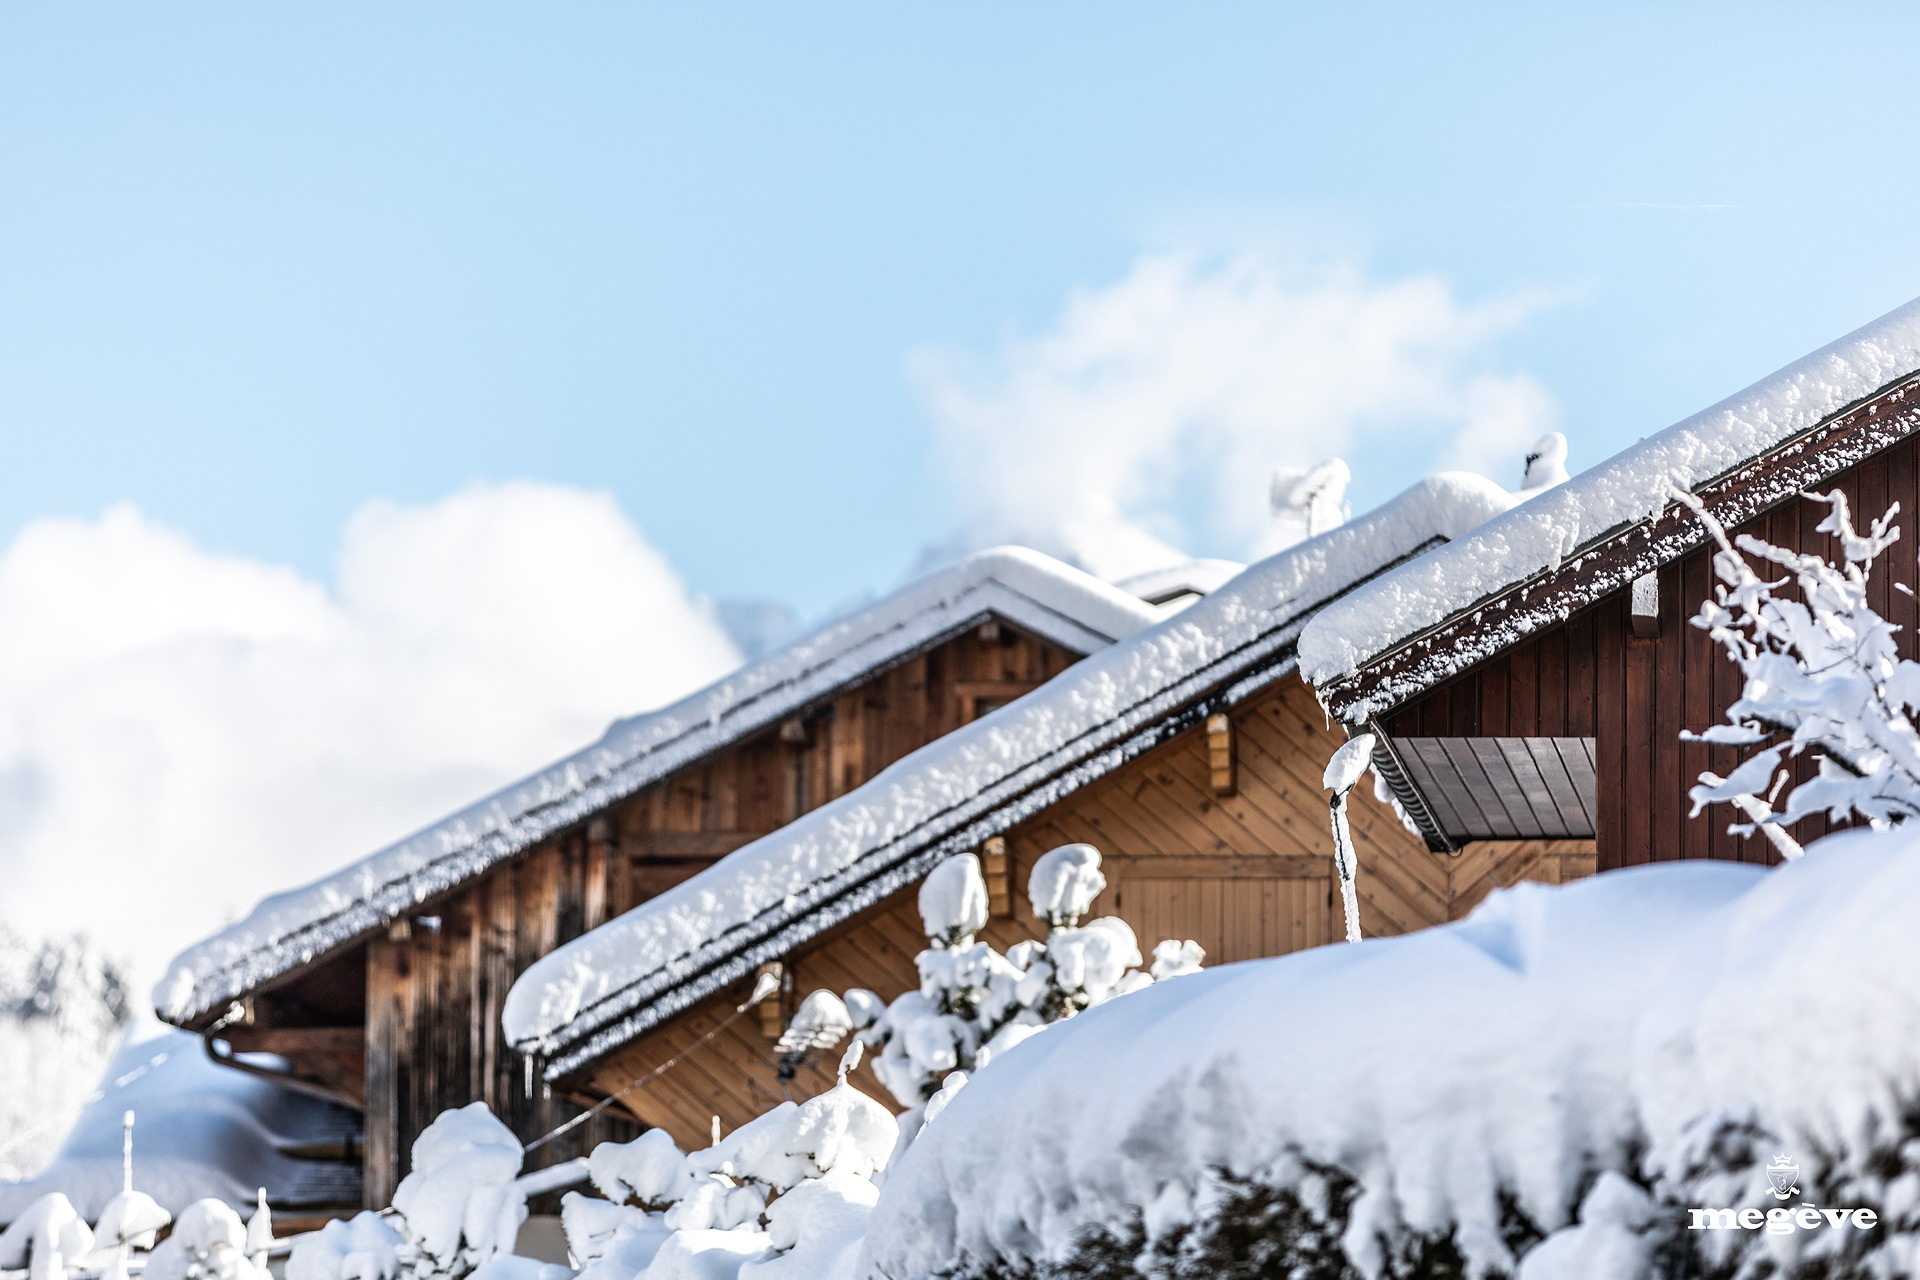 snow-chalets-ski-station-megeve-winter